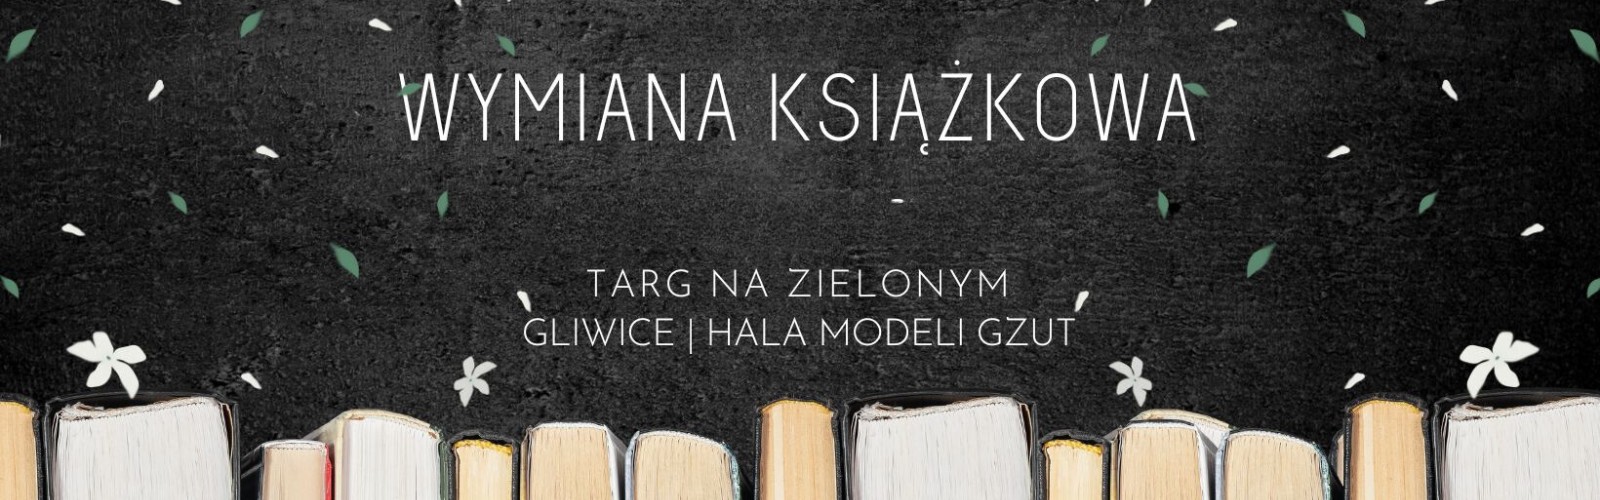 Baner z informacją o wymianach książek na Targu na Zielonym